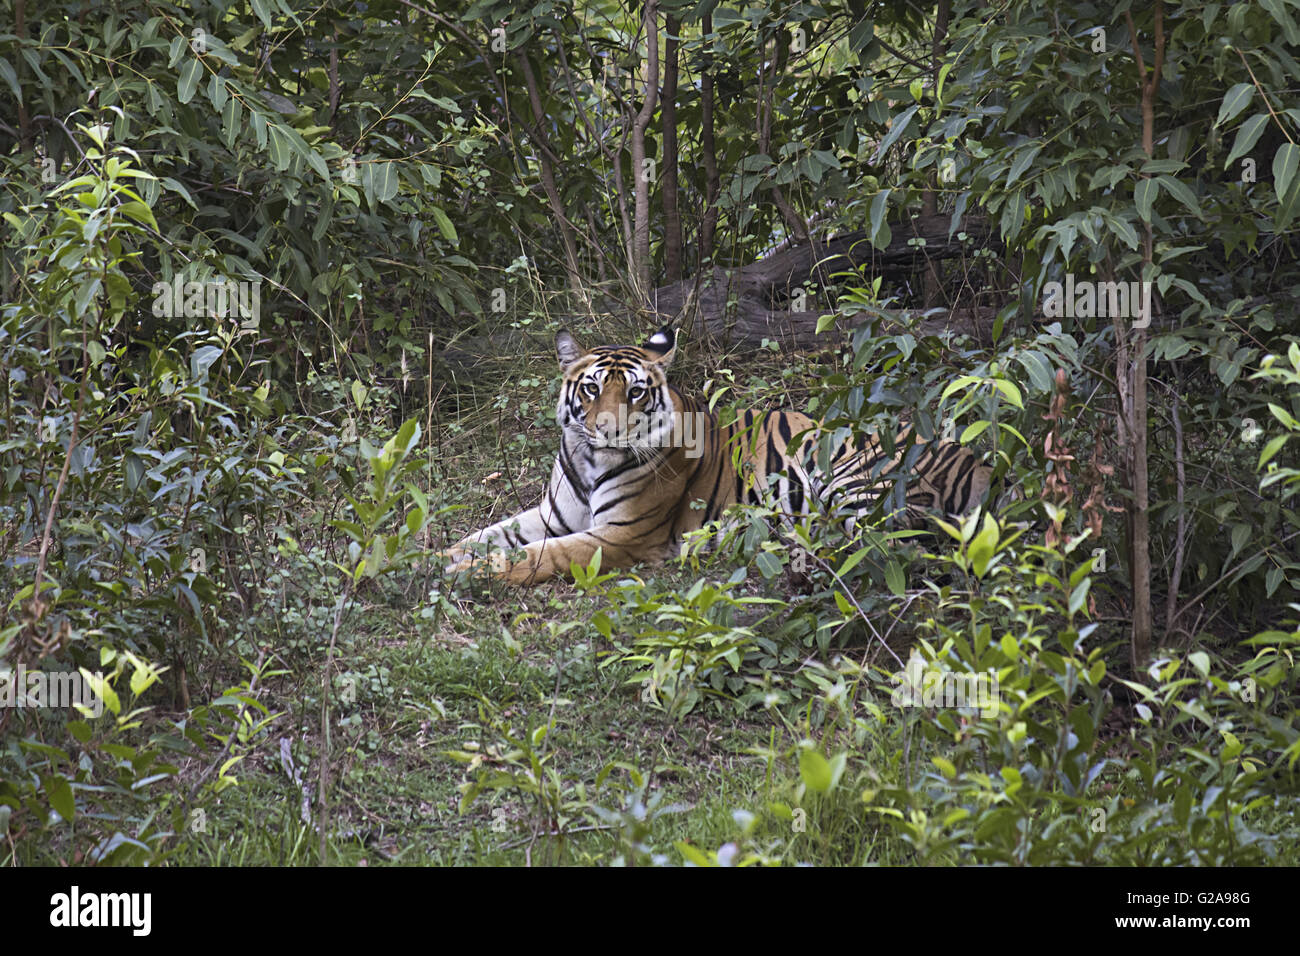 Tiger- Panthera tigris tigris. Banbehi female, Bandhavgarh Tiger Reserve, Madhya Pradesh, India Stock Photo